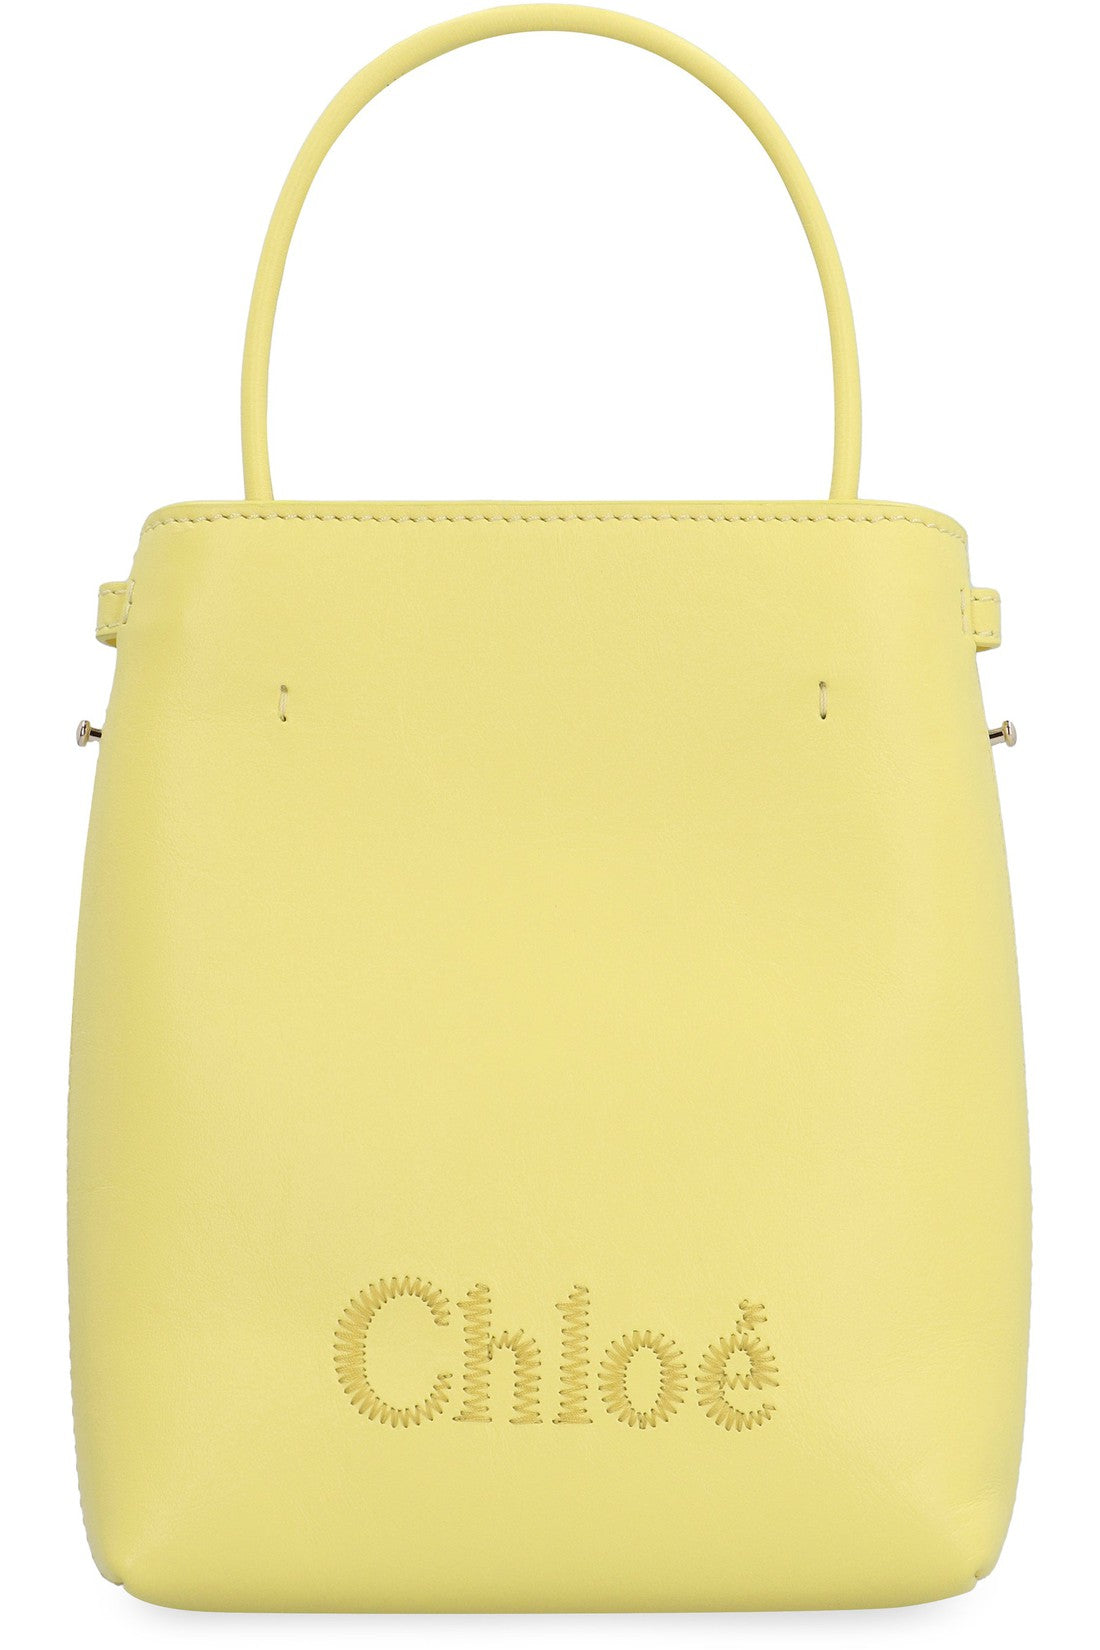 Chloé-OUTLET-SALE-Sense Leather bucket bag-ARCHIVIST